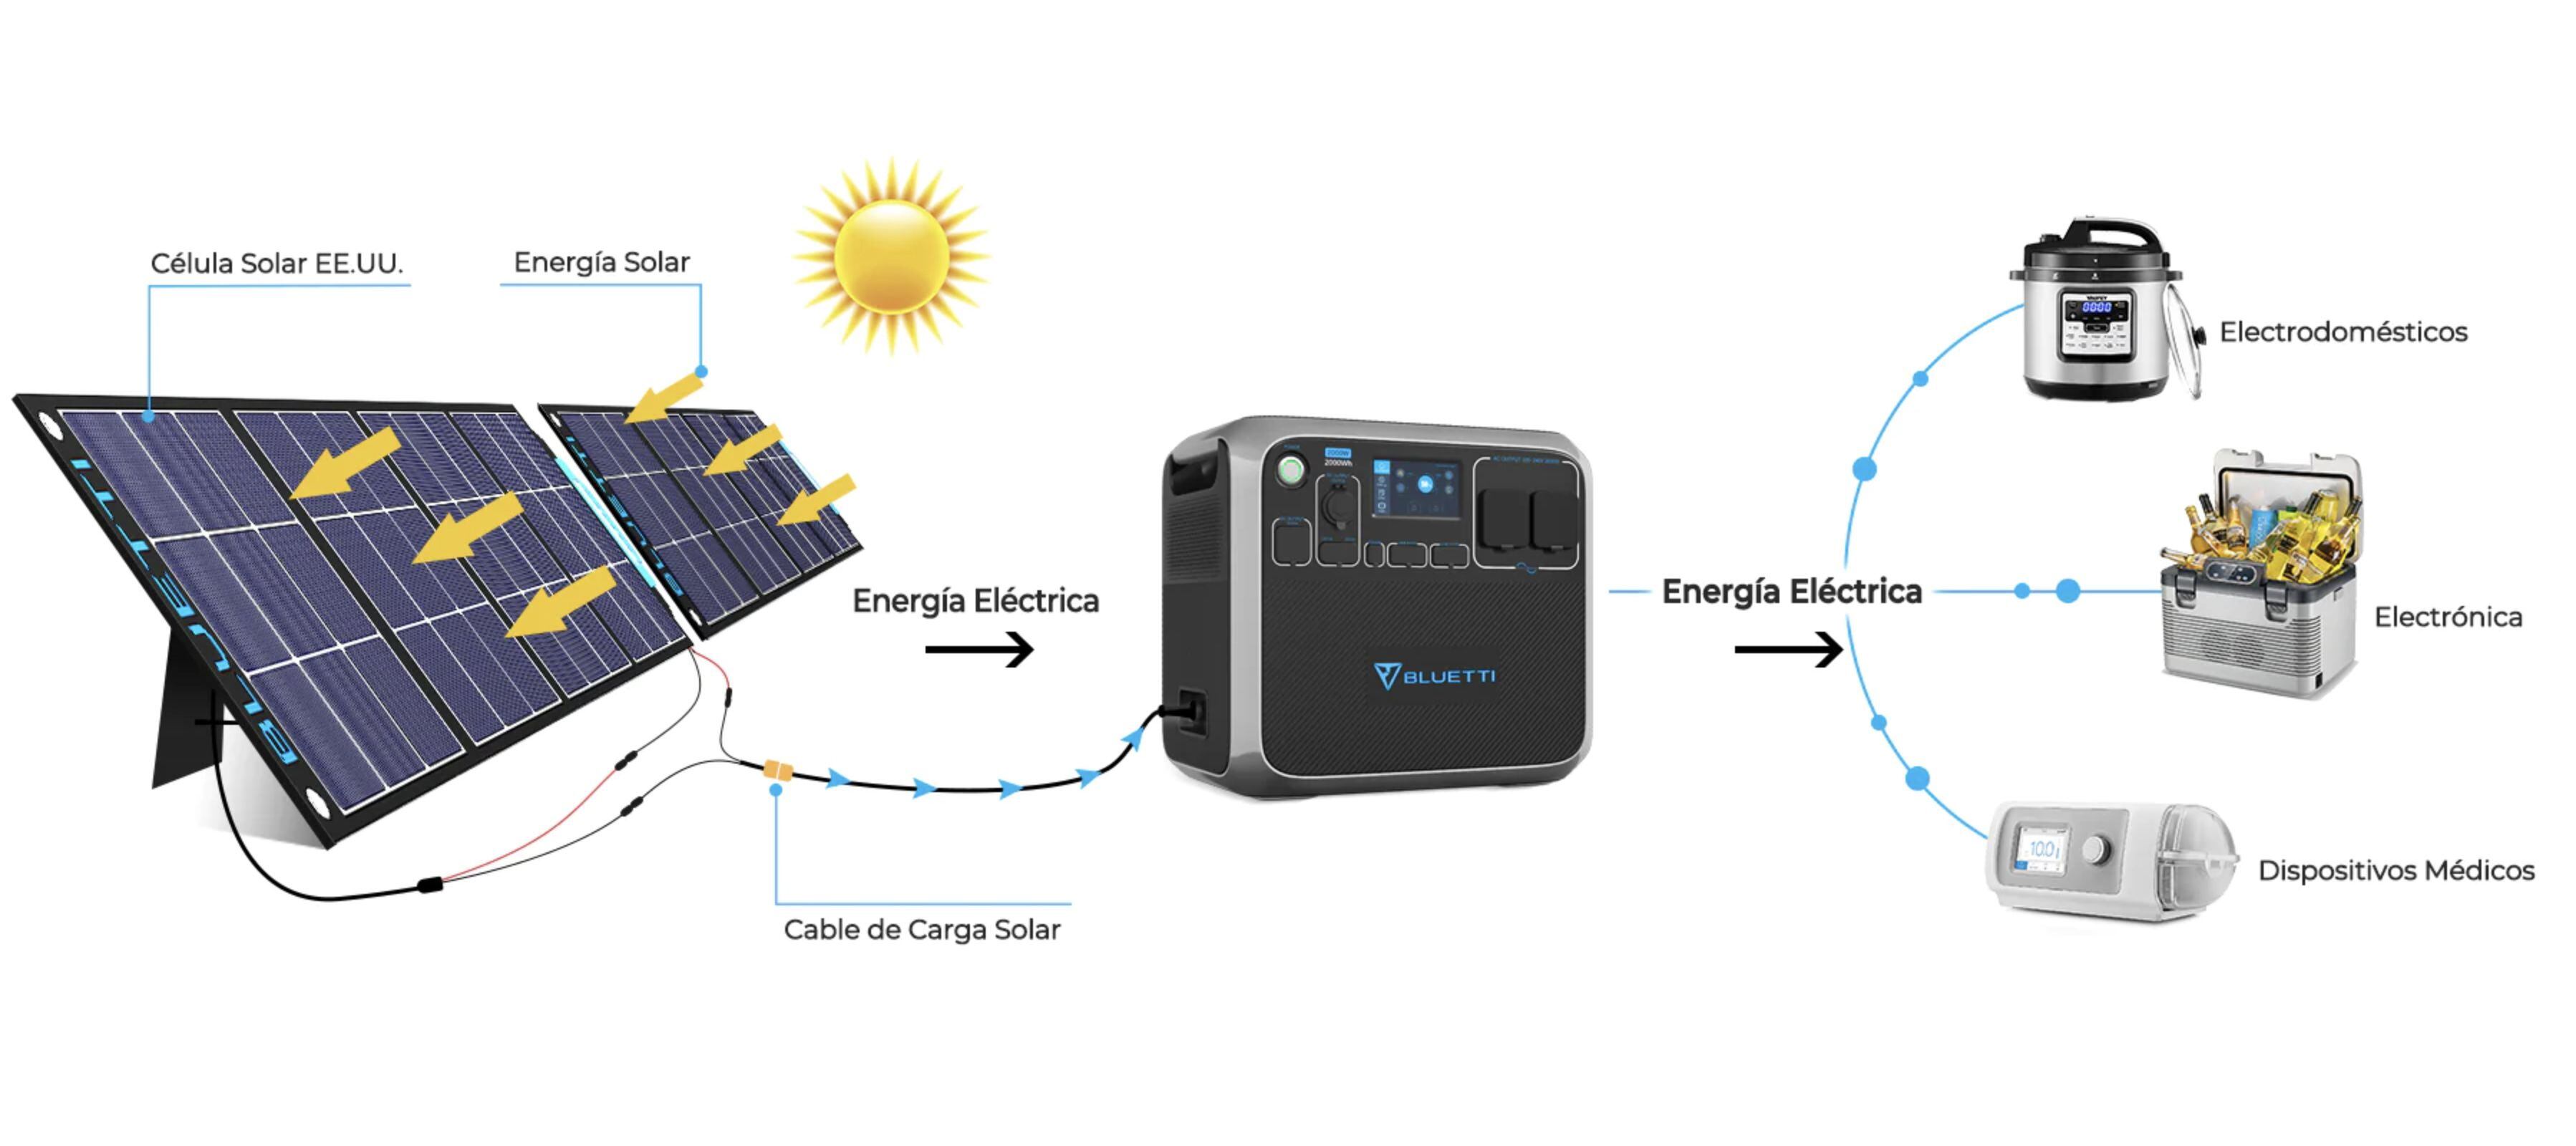 Este es el funcionamiento de un generador solar portátil, que se adapta para recargar una gran variedad de dispositivos. (Foto: hibridosyelectricos.com)